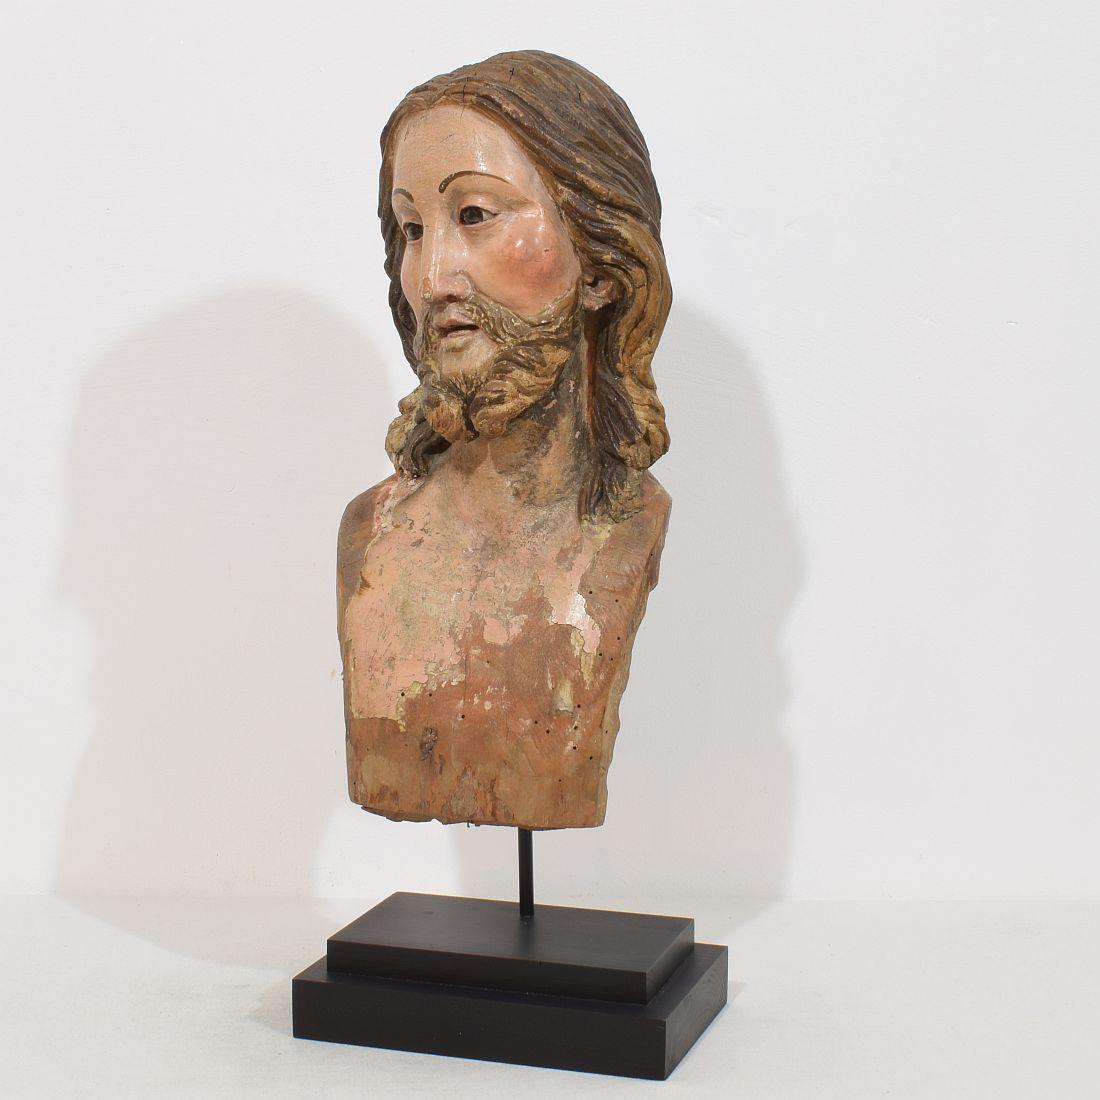 Einzigartiger handgeschnitzter Holzkopf von Christus mit schönem Ausdruck und Glasaugen, der früher bei Prozessionen verwendet wurde.
Neapel/ Italien, ca. 1750-1800. Ein schönes Beispiel für die Handwerkskunst des 18. Jahrhunderts. Der Kopf ist